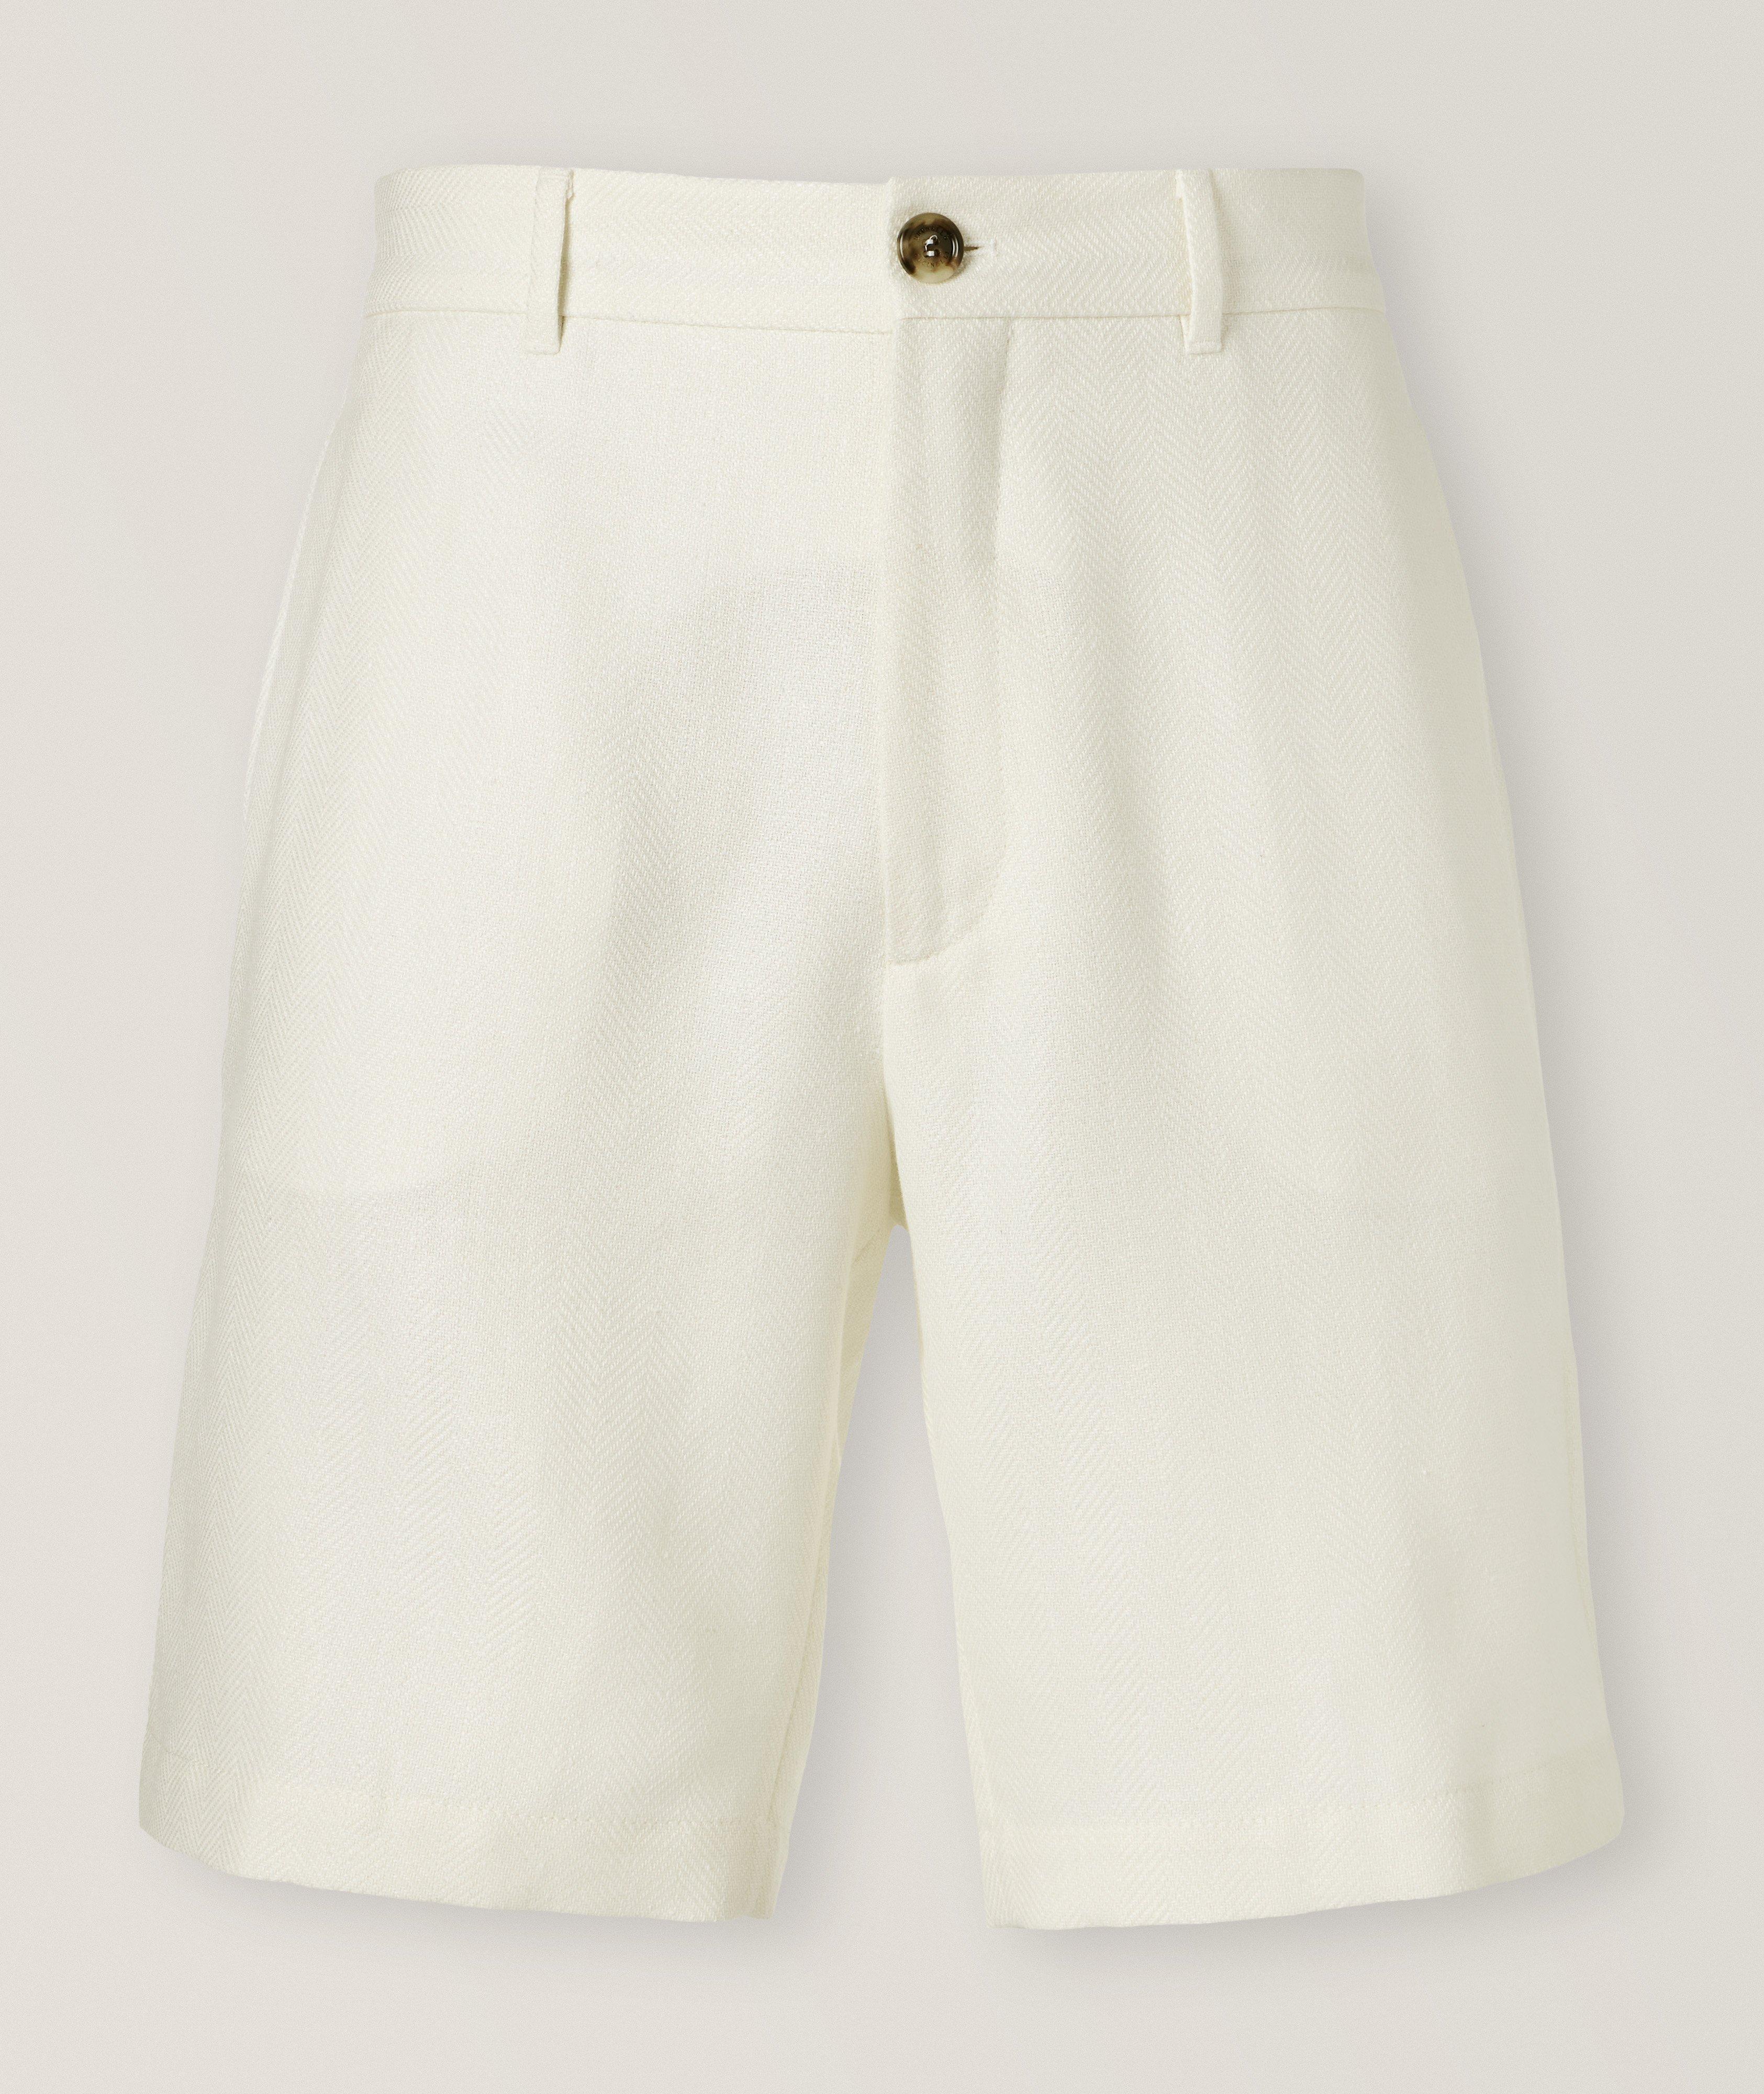 Herringbone Textured Bermuda Shorts  image 0